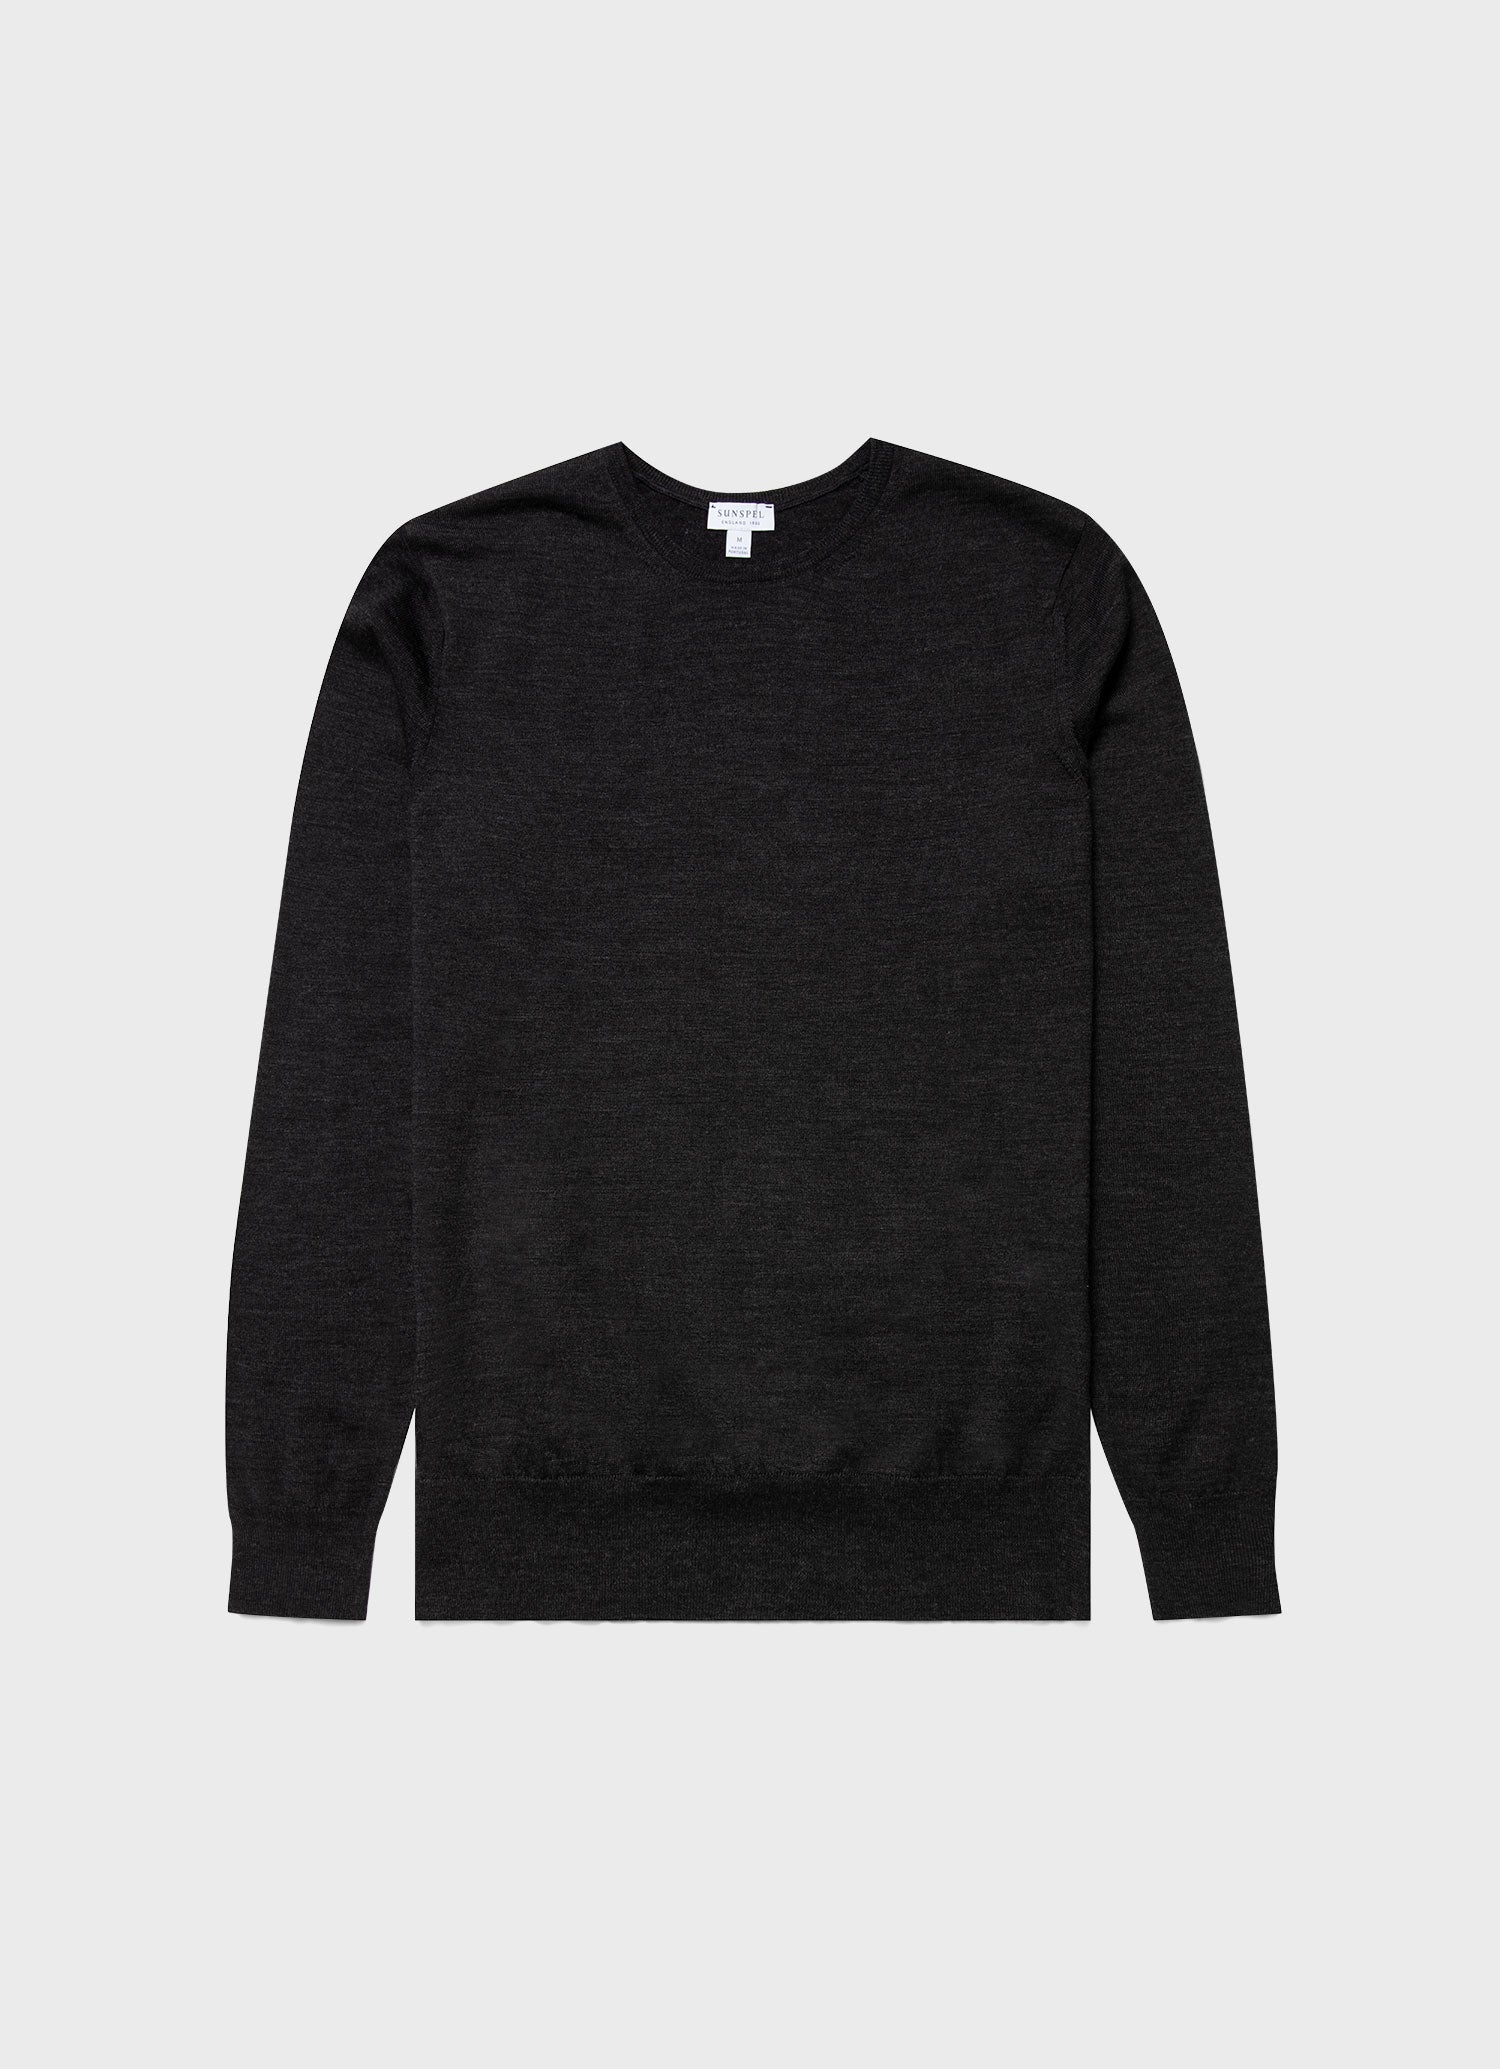 【新品未使用】SUNSPEL Sweater